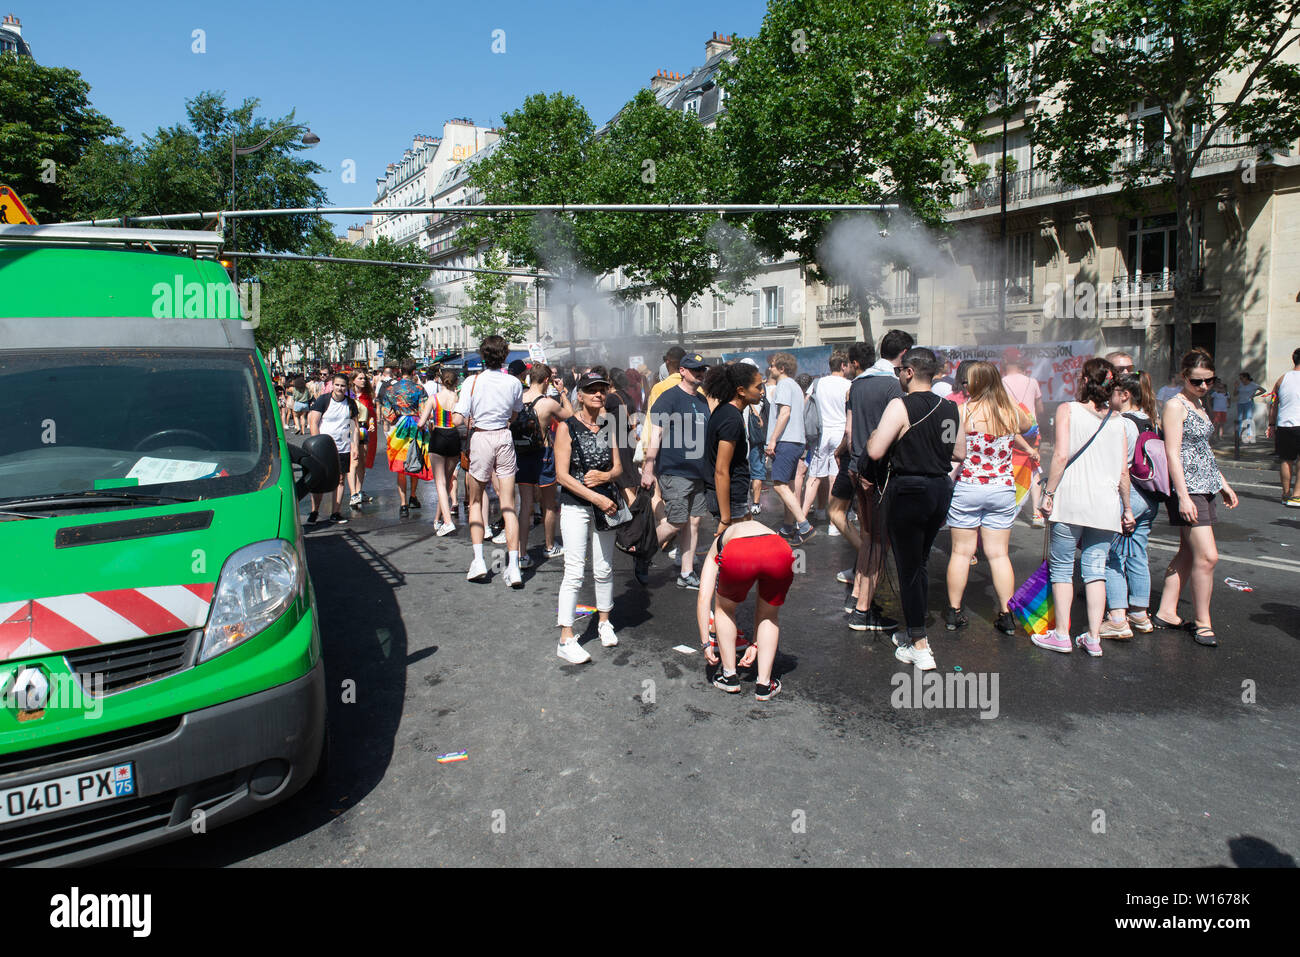 Le persone godono di canoni di acqua messo in atto da Parigi servizi comunali per raffreddare i partecipanti al Paris 2019 Gay Pride. Foto Stock